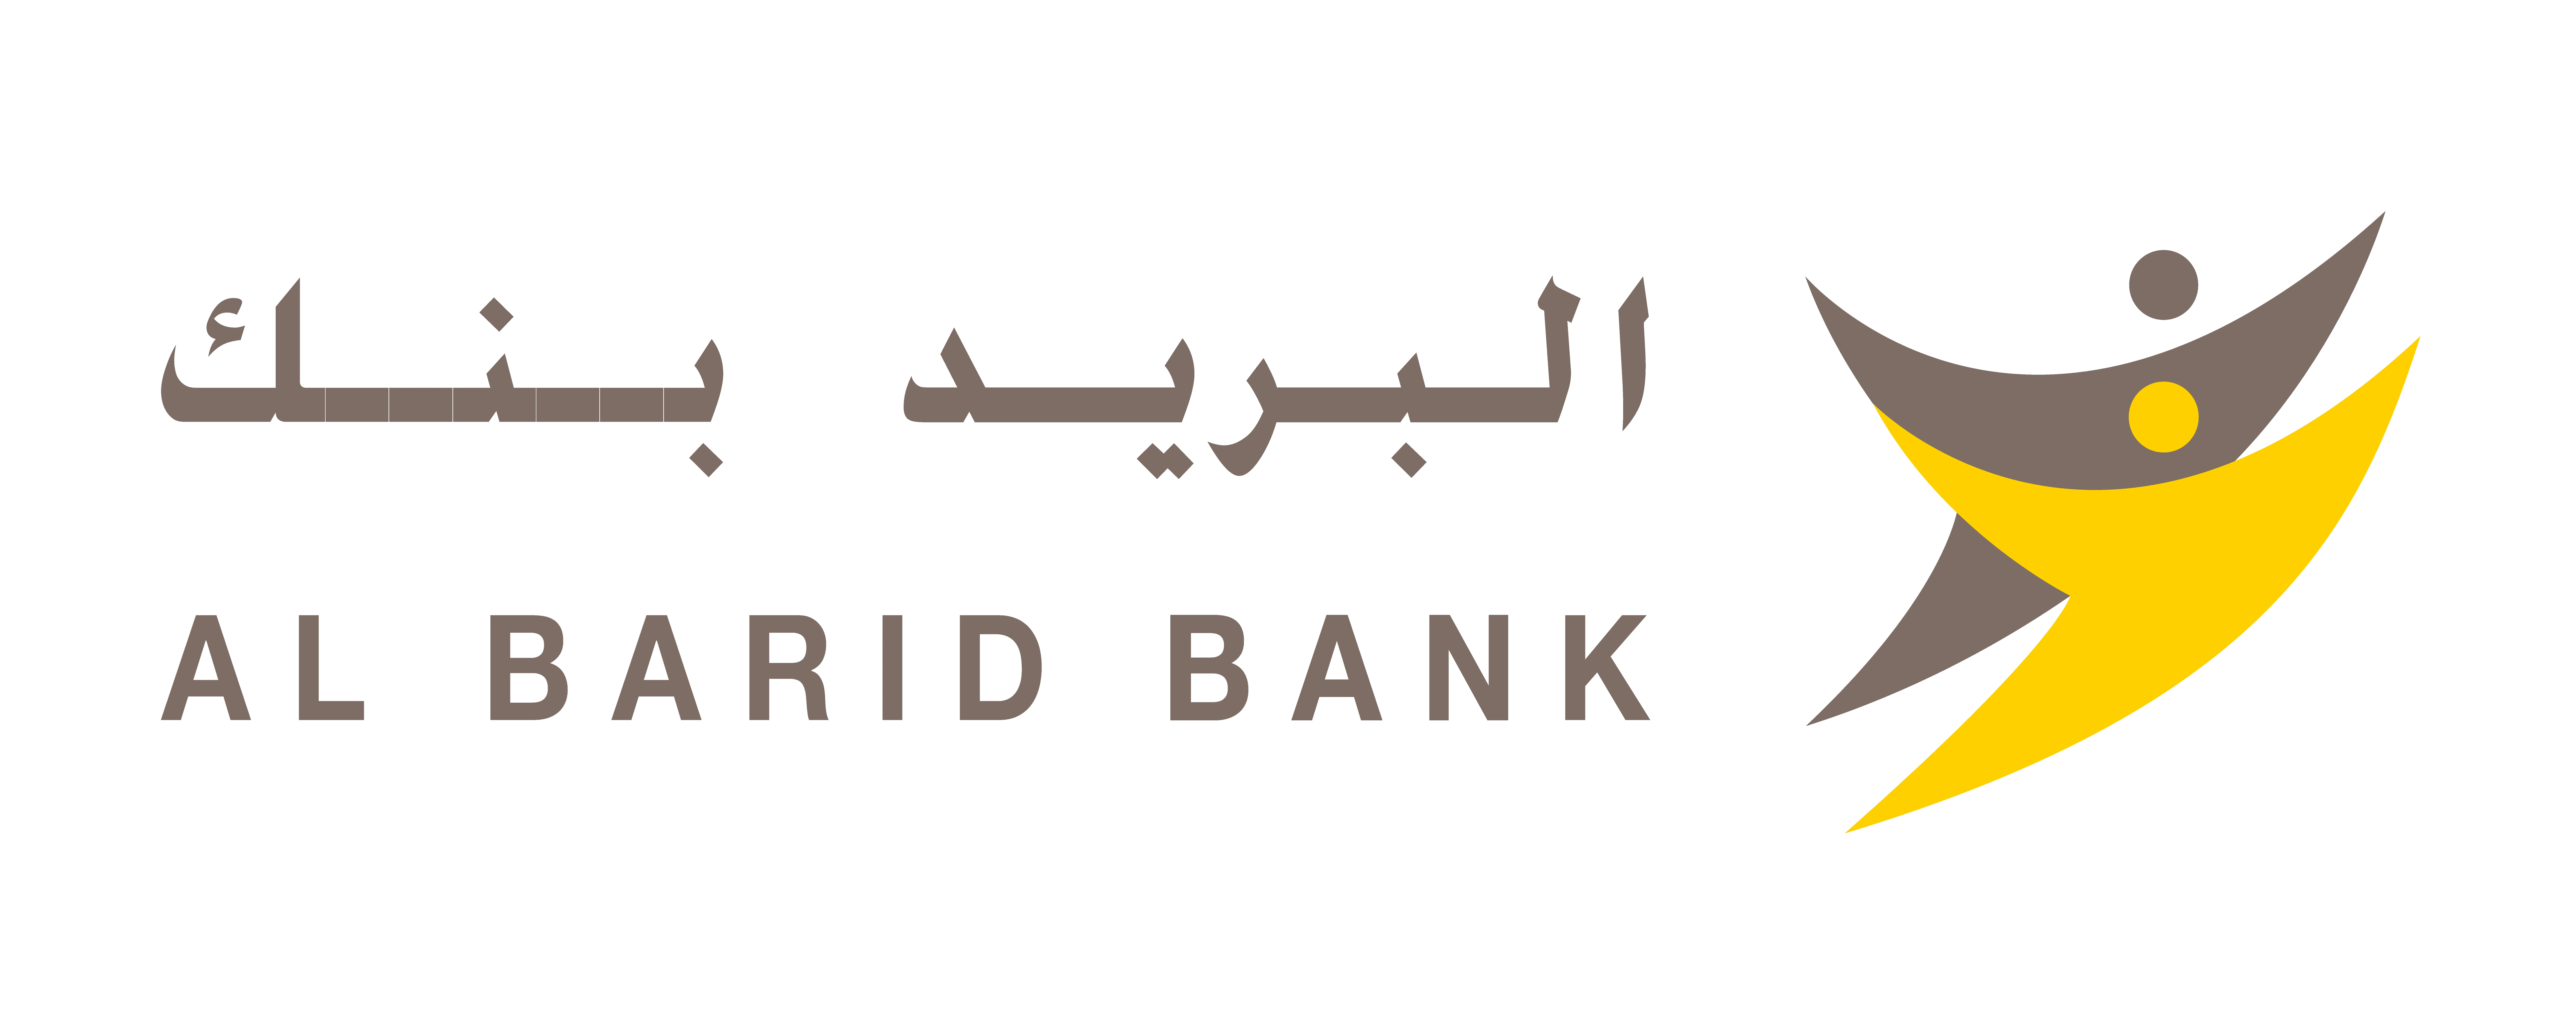 Al Barid Bank logo